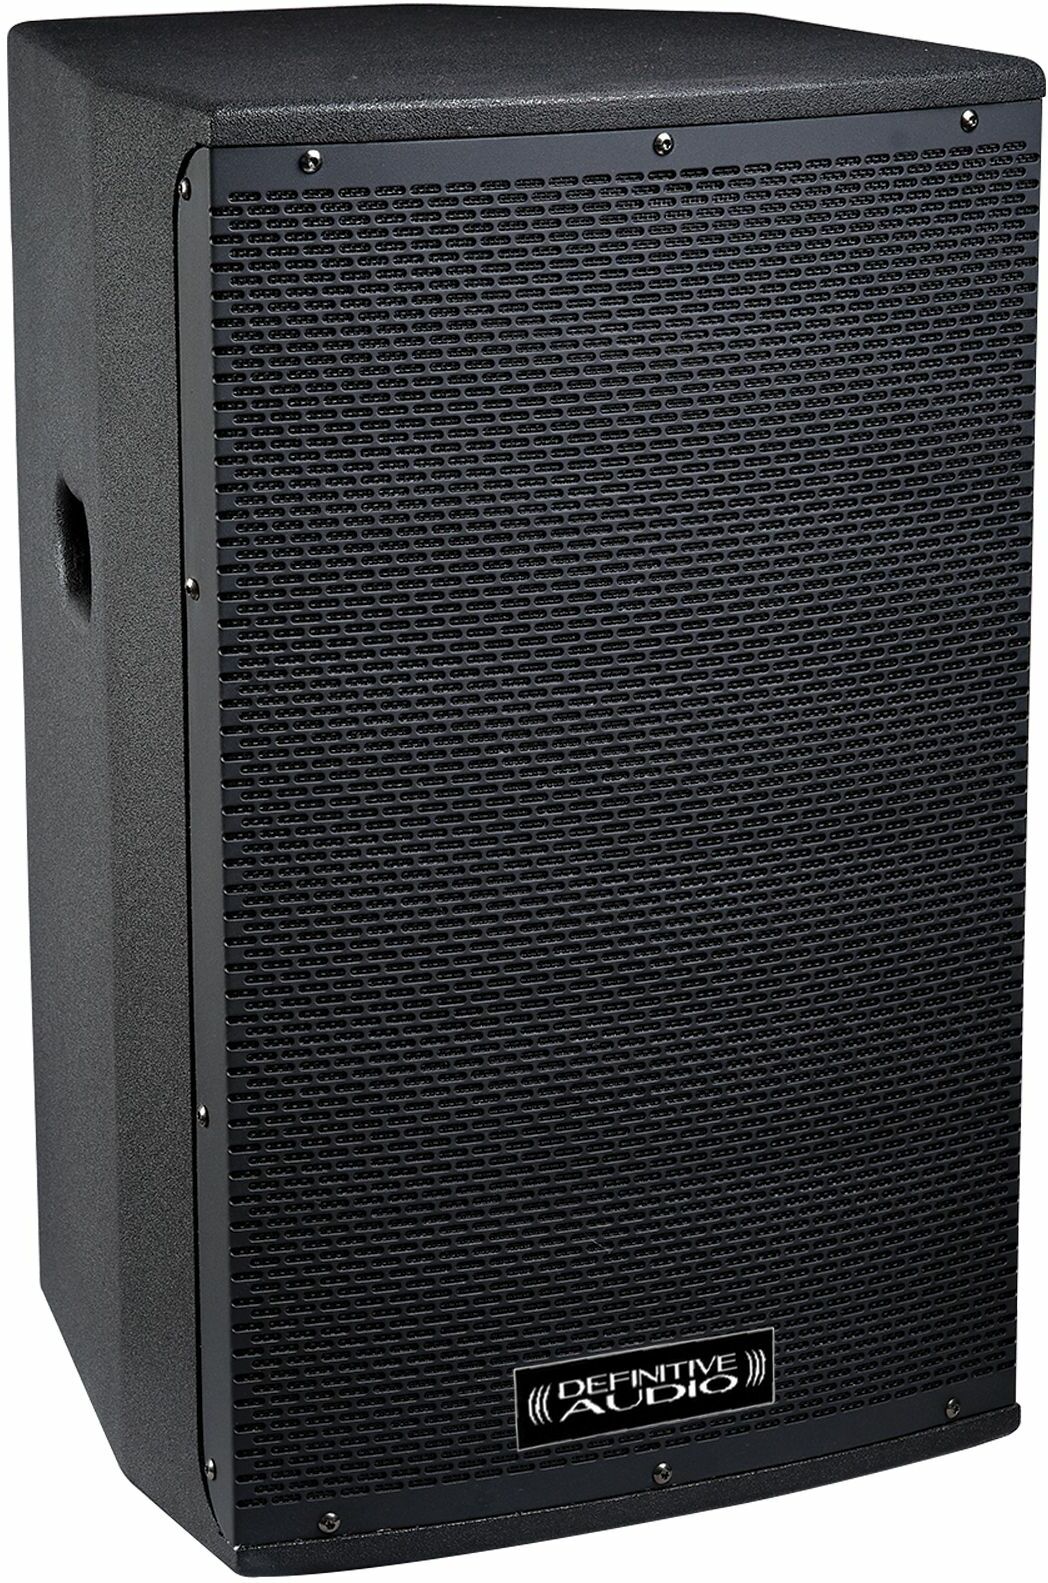 Definitive Audio Koala 15aw Dsp - Active full-range speaker - Main picture